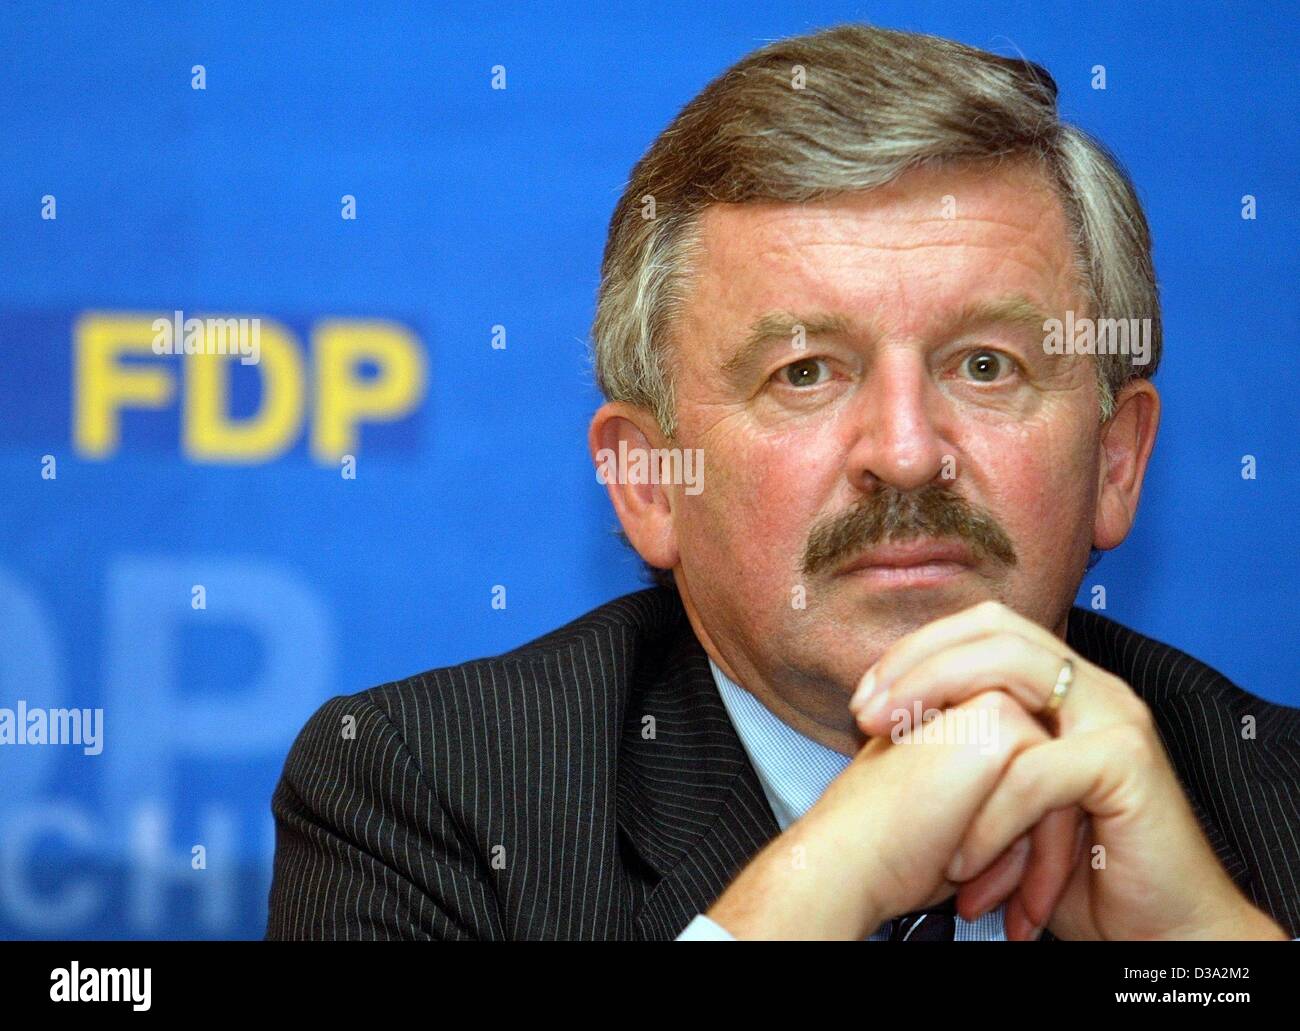 (Dpa) - Juergen Moellemann, stellvertretender Vorsitzender der deutschen Liberalen Partei FDP und Vorsitzender der FDP im Bundesland NRW, 4. Juni 2002 in Lübeck, abgebildet. Stockfoto